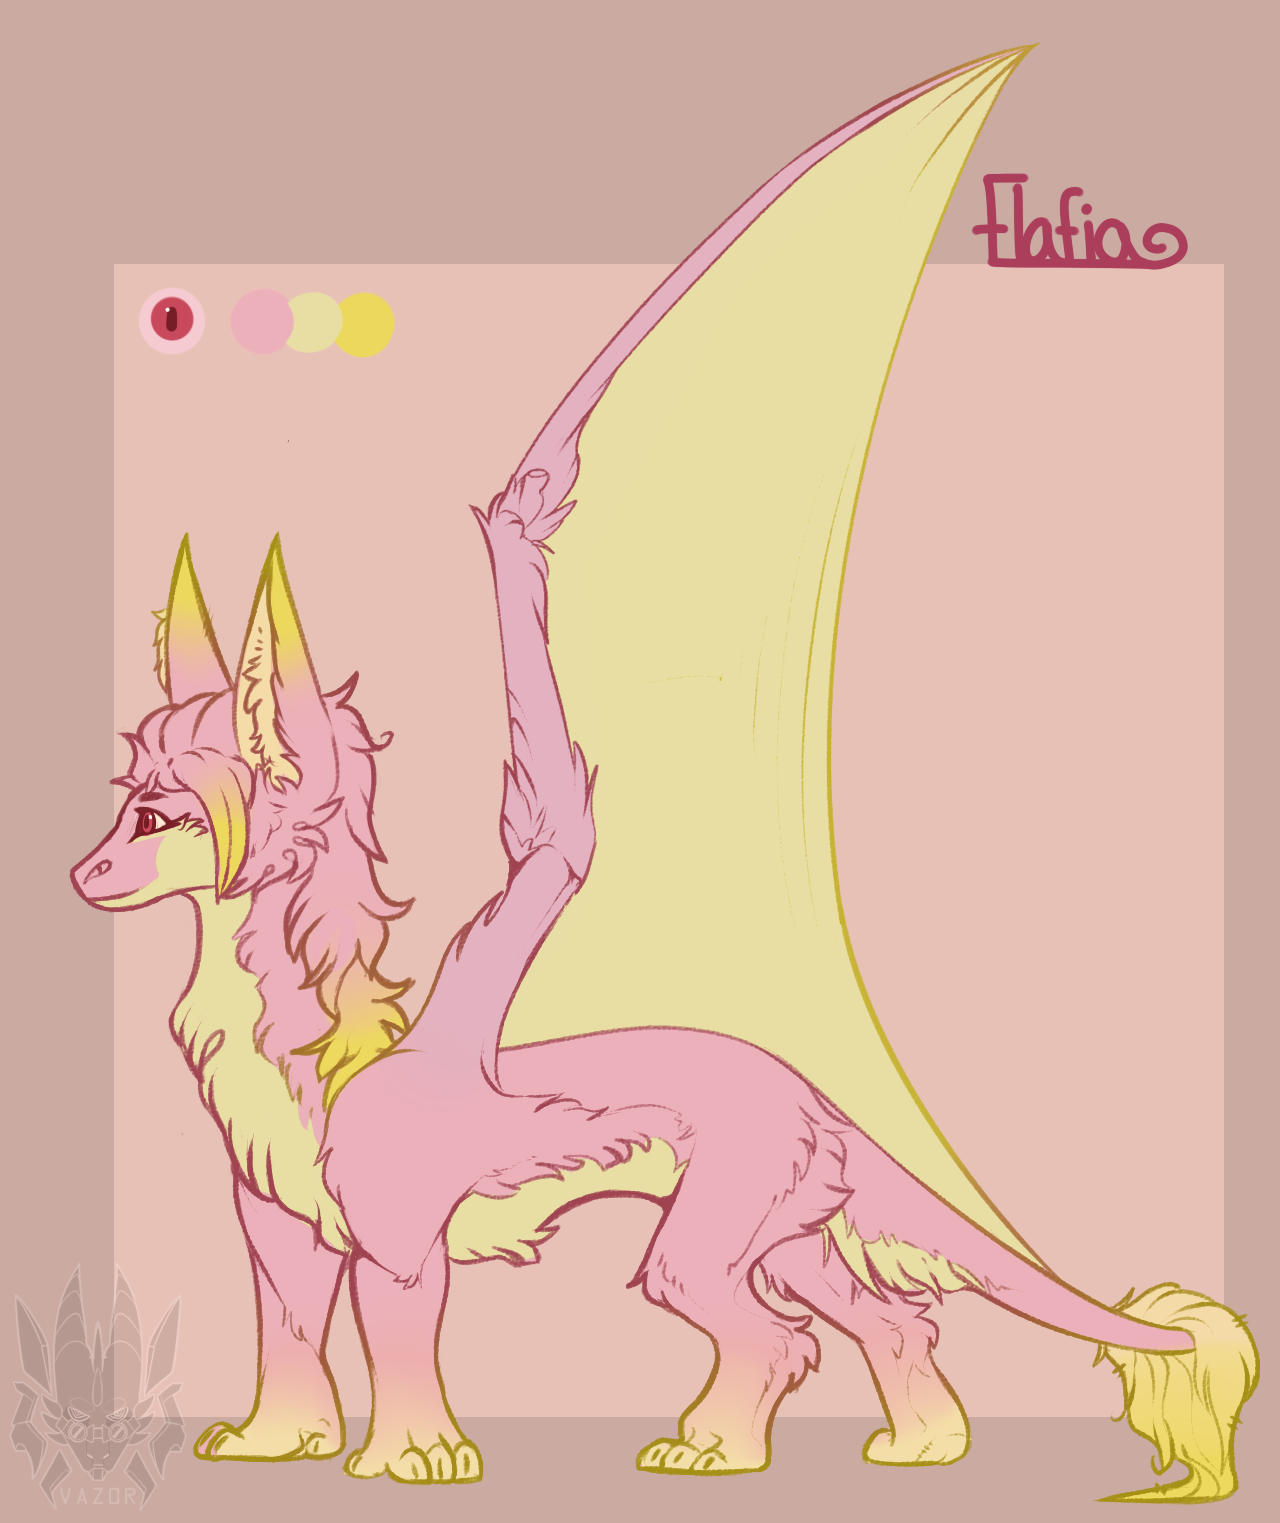 Flafia est une petite dracène, couverte d'une fourrure rose et jaune pâles